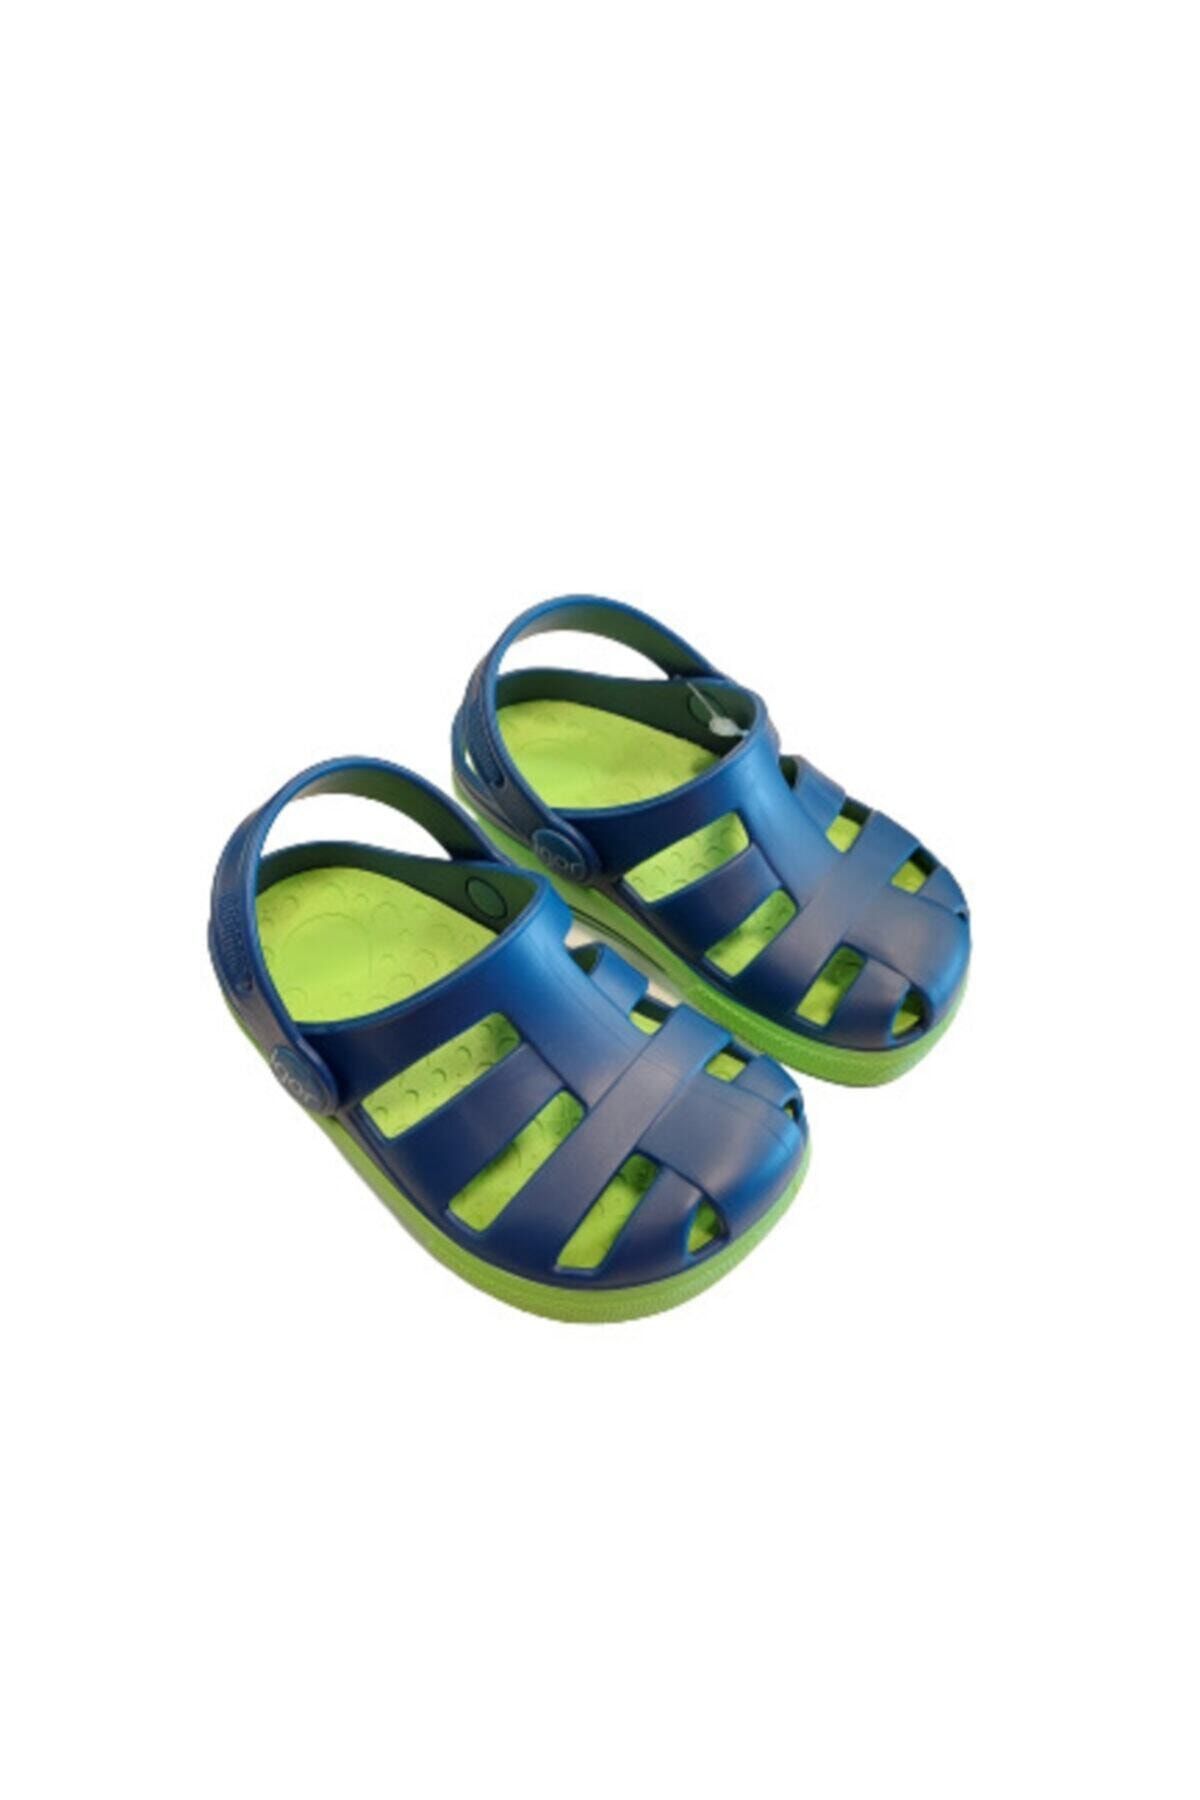 IGOR S10284 Ola Combi Çocuk Mavi Yeşil Sandalet